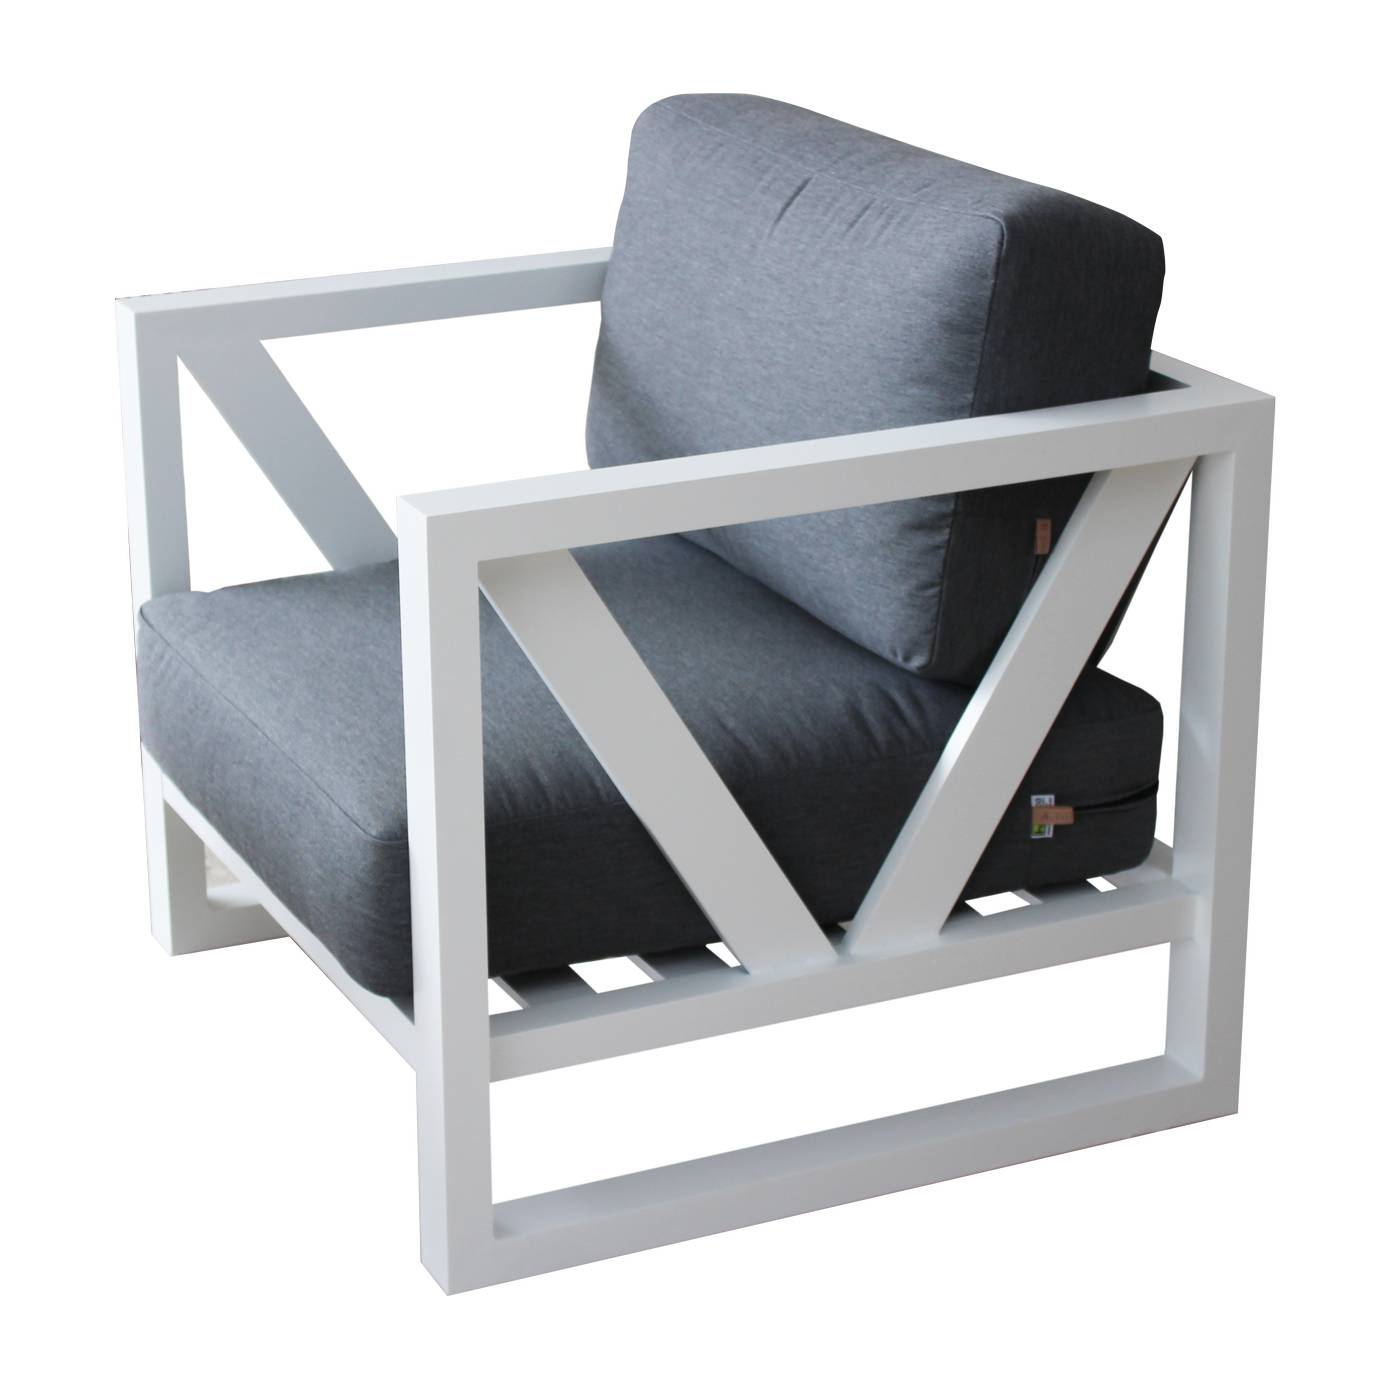 Set Aluminio Luxe Ventus-8 - Lujoso conjunto de aluminio: sofá 3 plazas + 2 sillones + mesa de centro. Color conjunto: blanco, antracita o champagne.